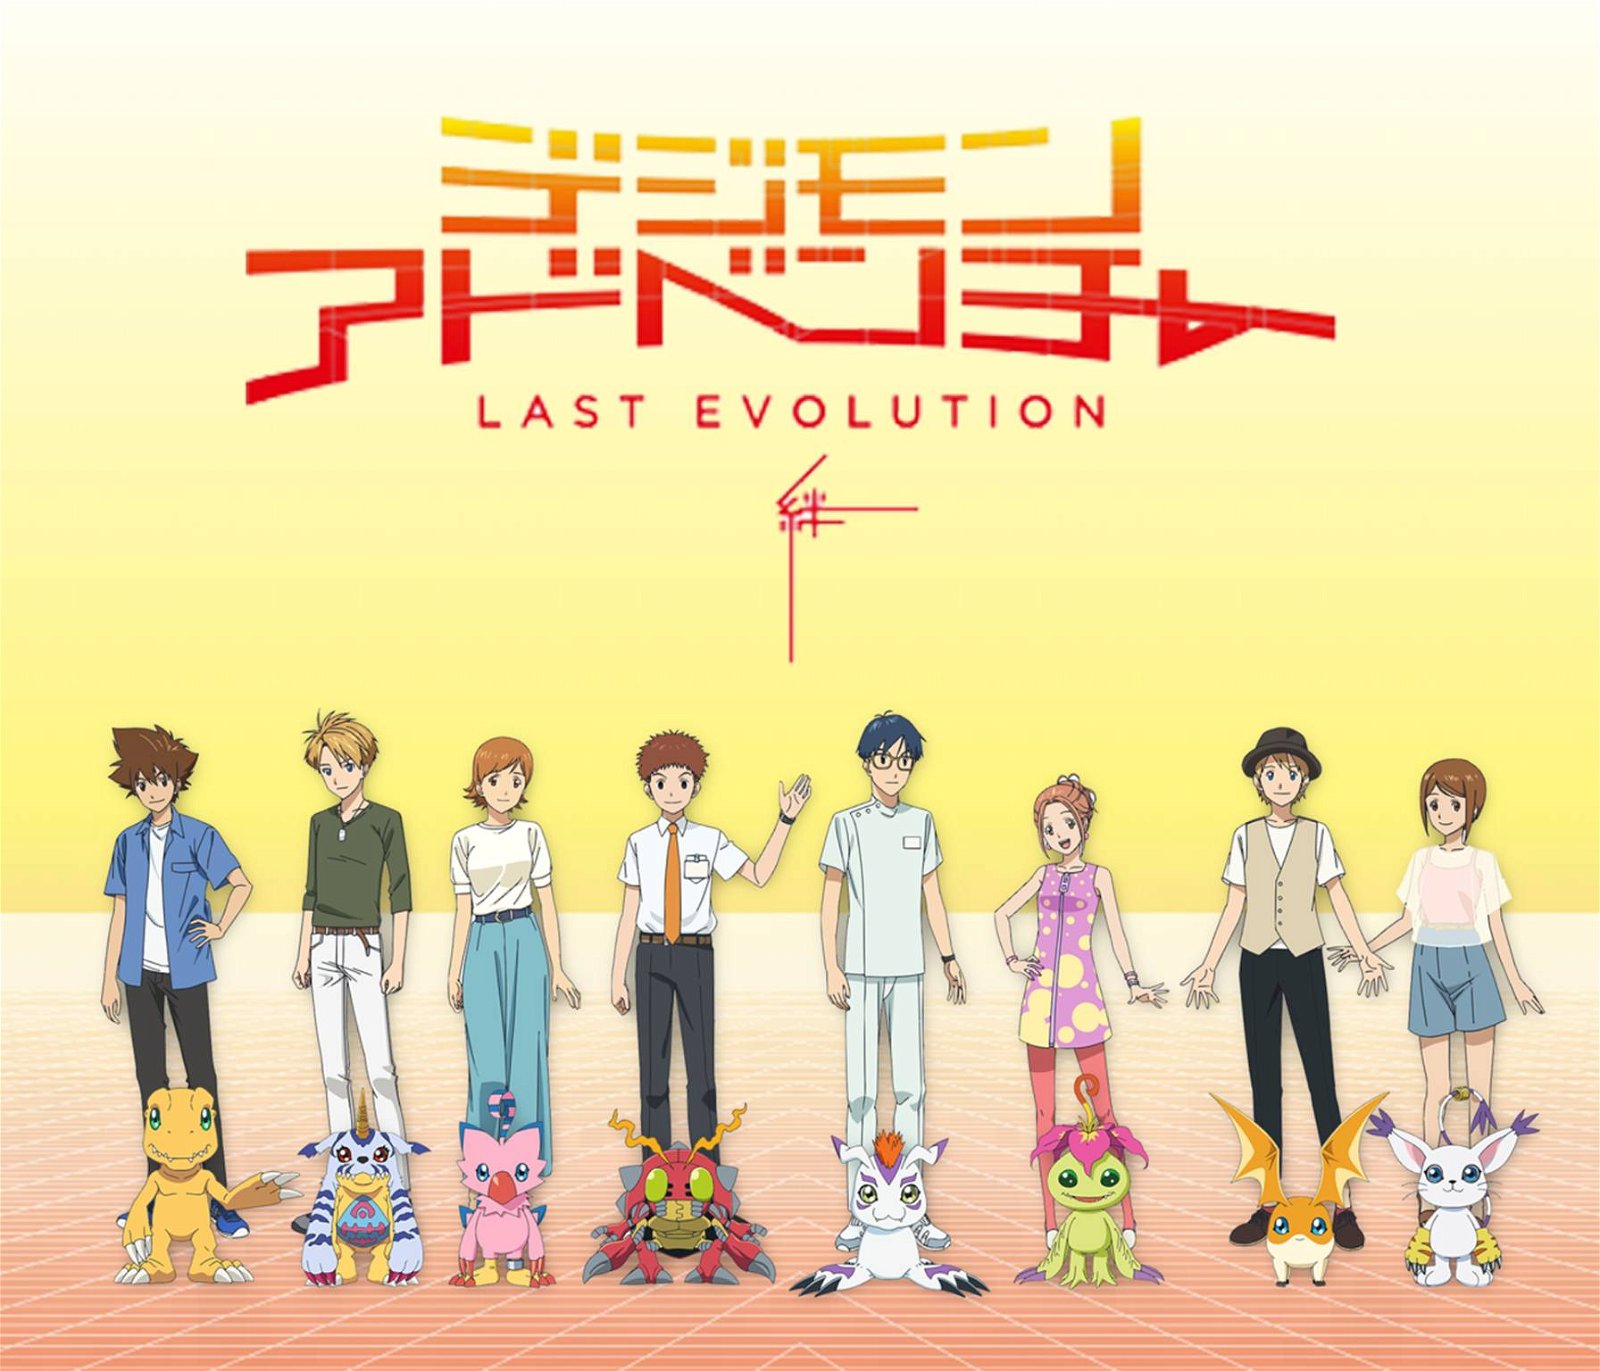 Immagine di Digimon Adventure: Last Evolution Kizuna, trailer e poster del nuovo film